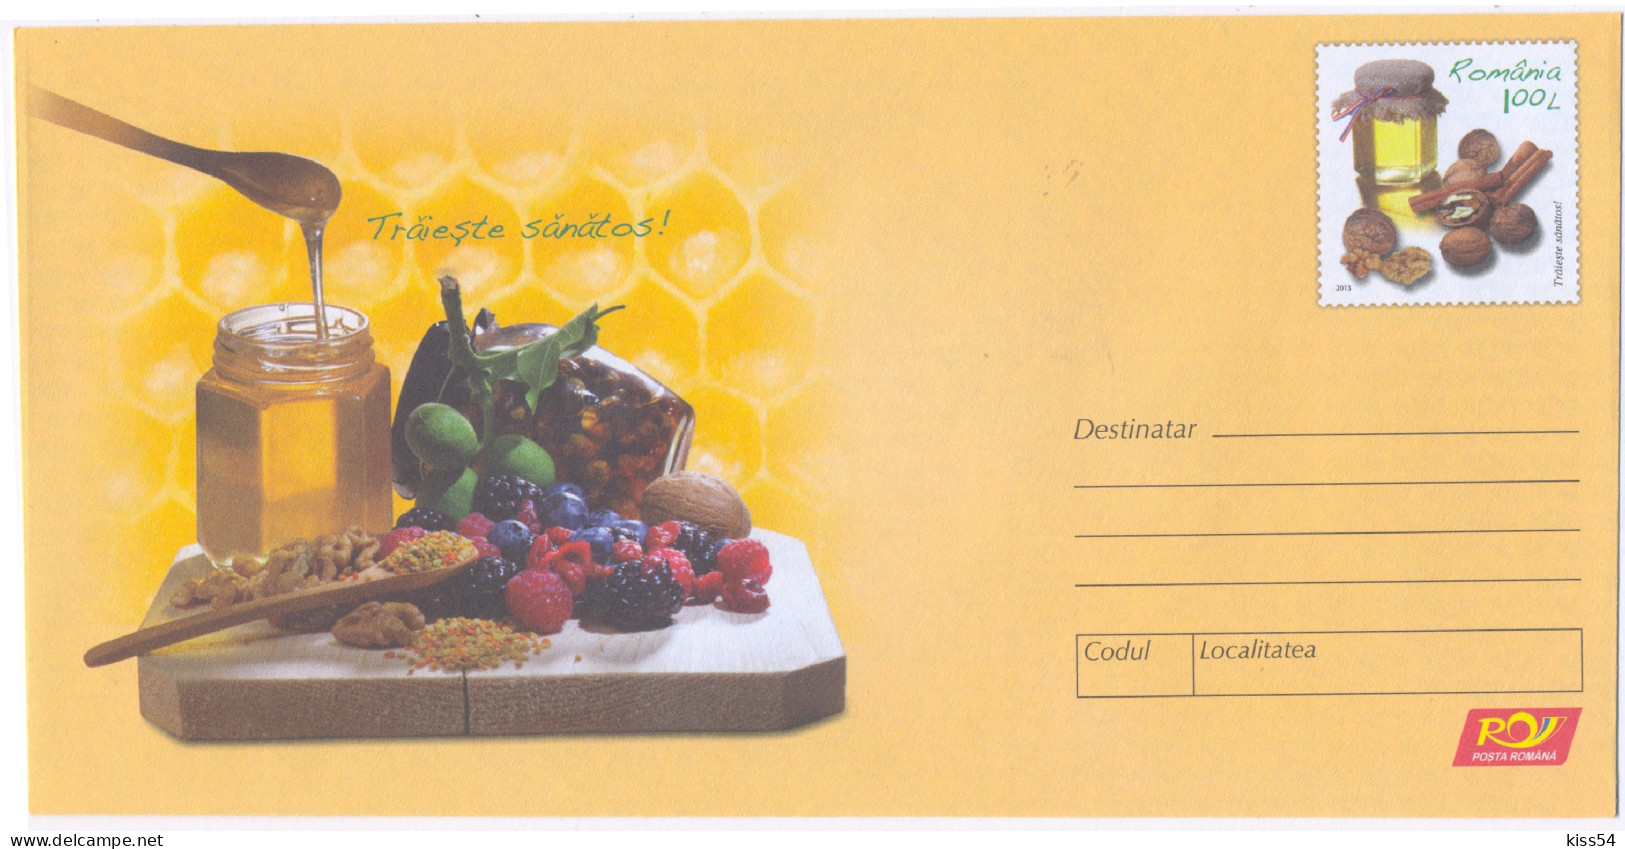 IP 2013 - 4 HONEY Eat Healthy Berries (blueberries, Blackberries Raspberries) Walnuts - Stationery - Unused - 2013 - Postal Stationery